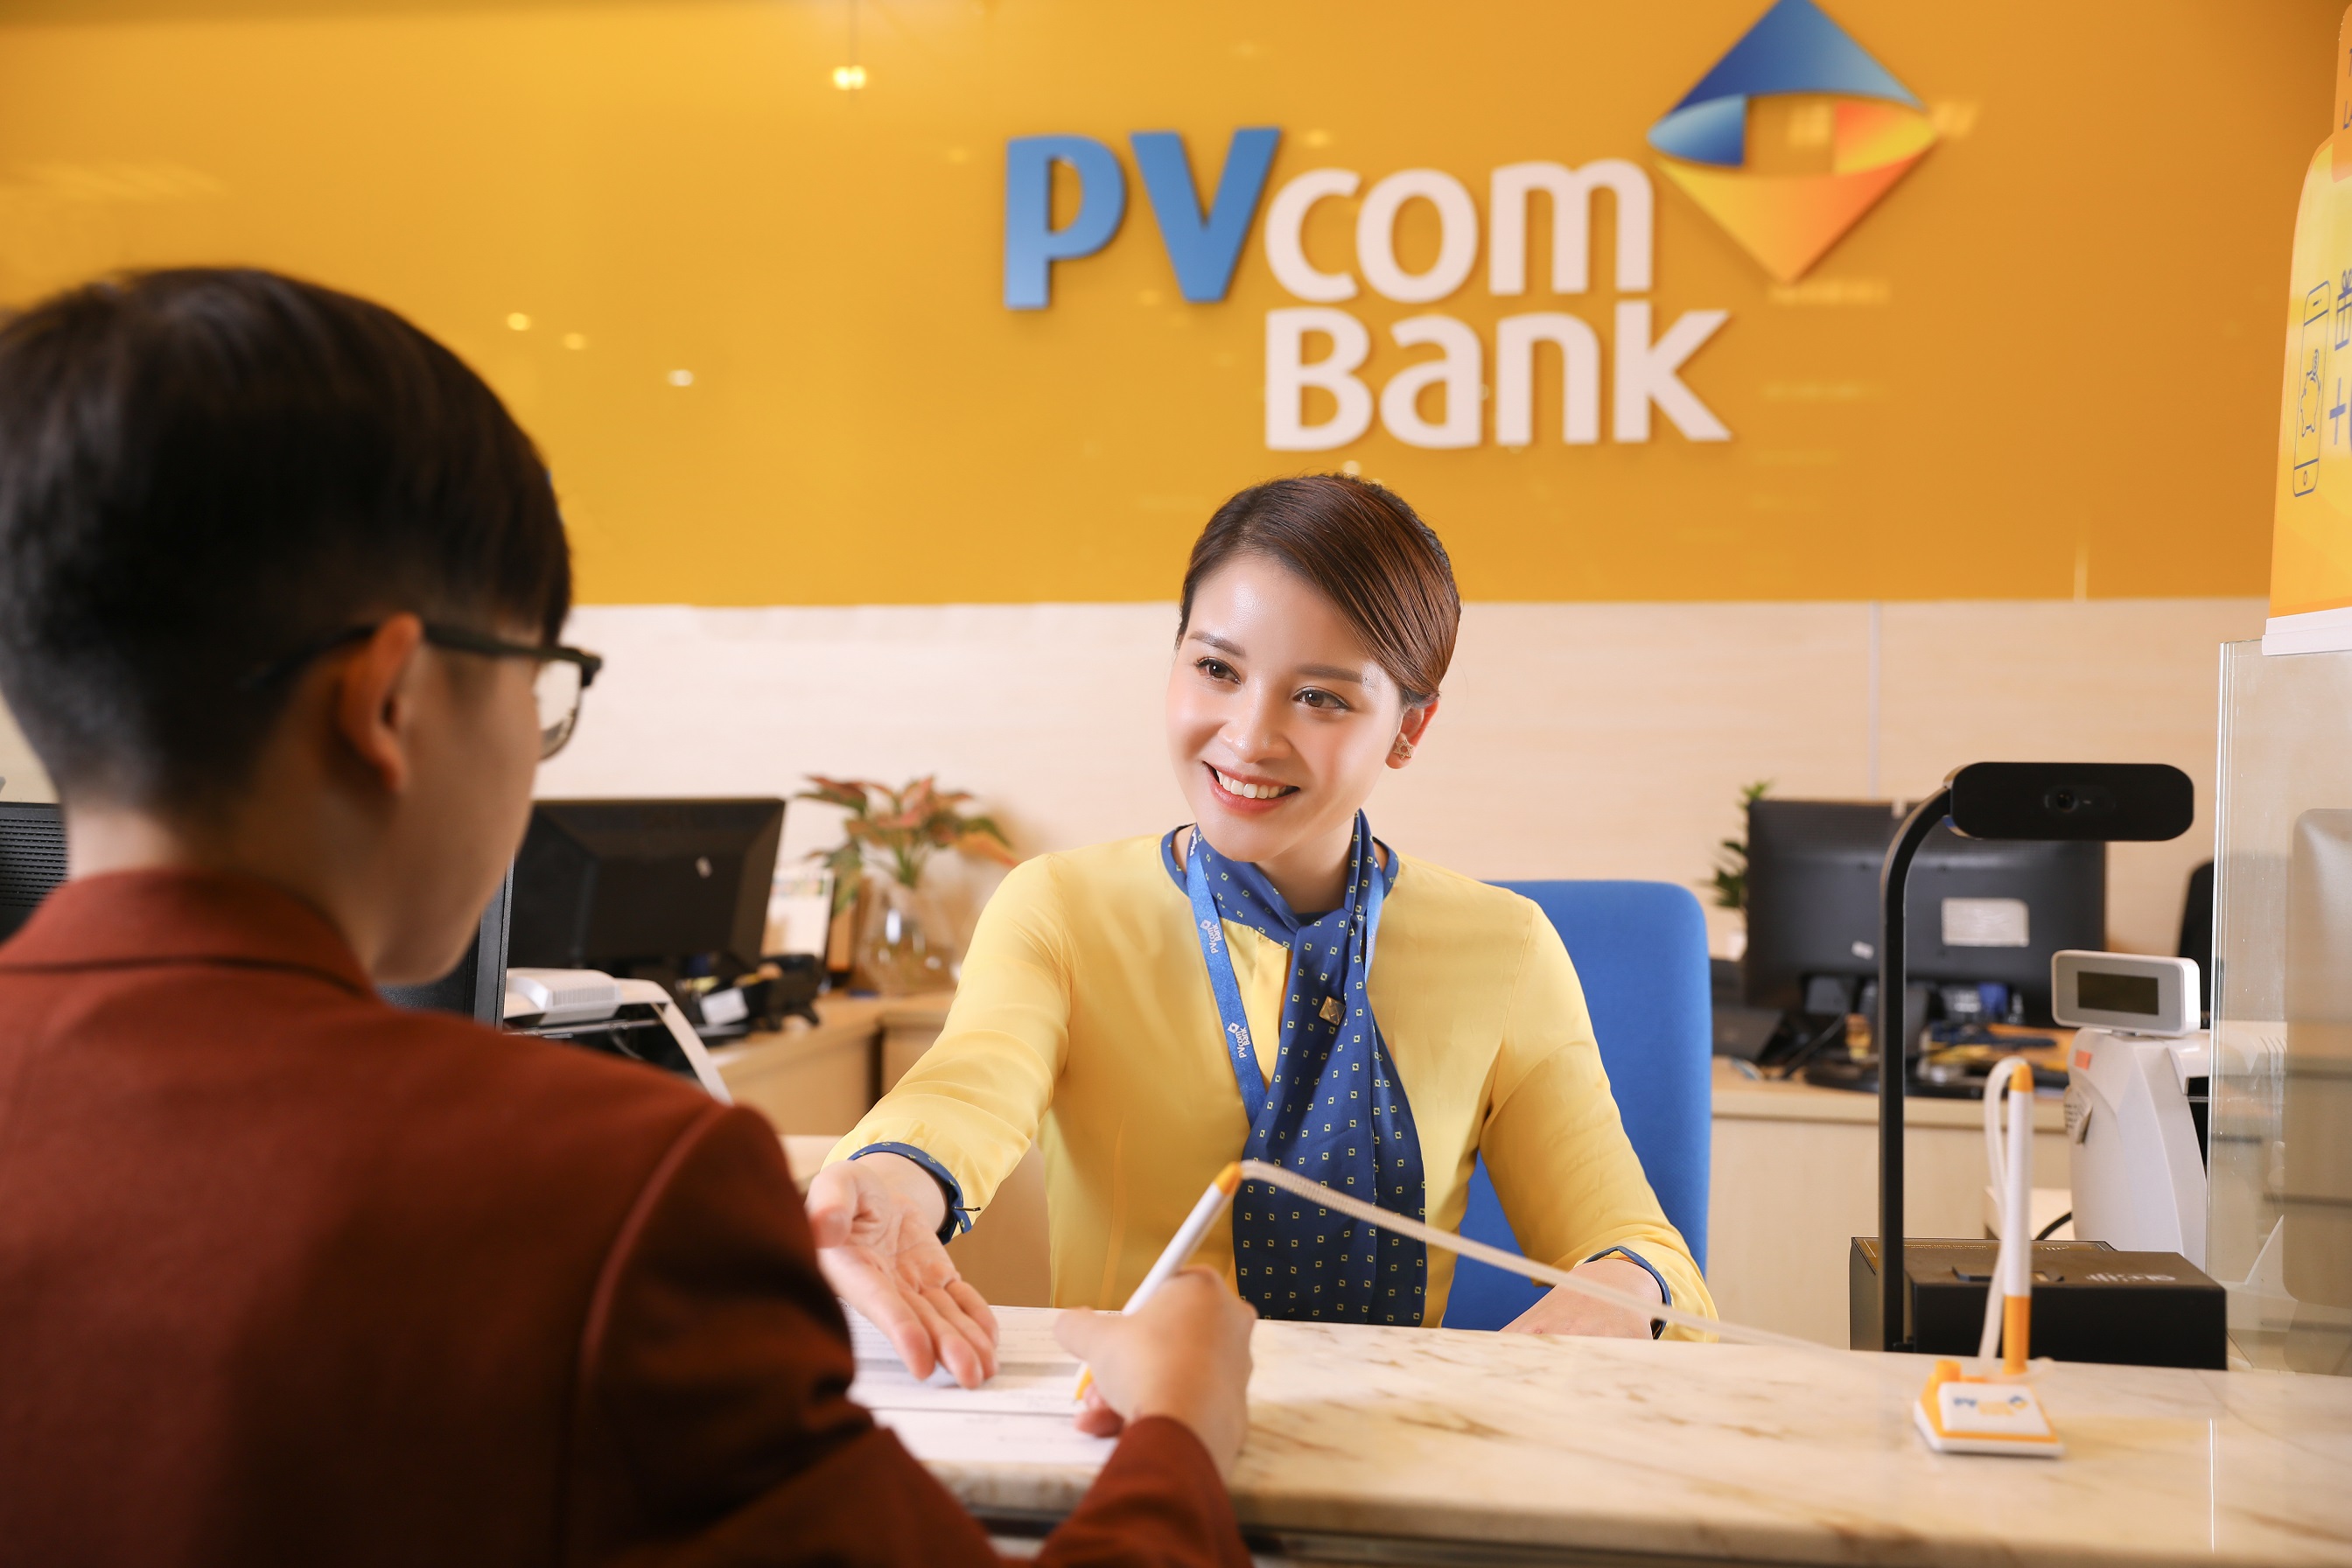 Kinh tế - PVcomBank triển khai gói tín dụng ưu đãi cho khách hàng cá nhân